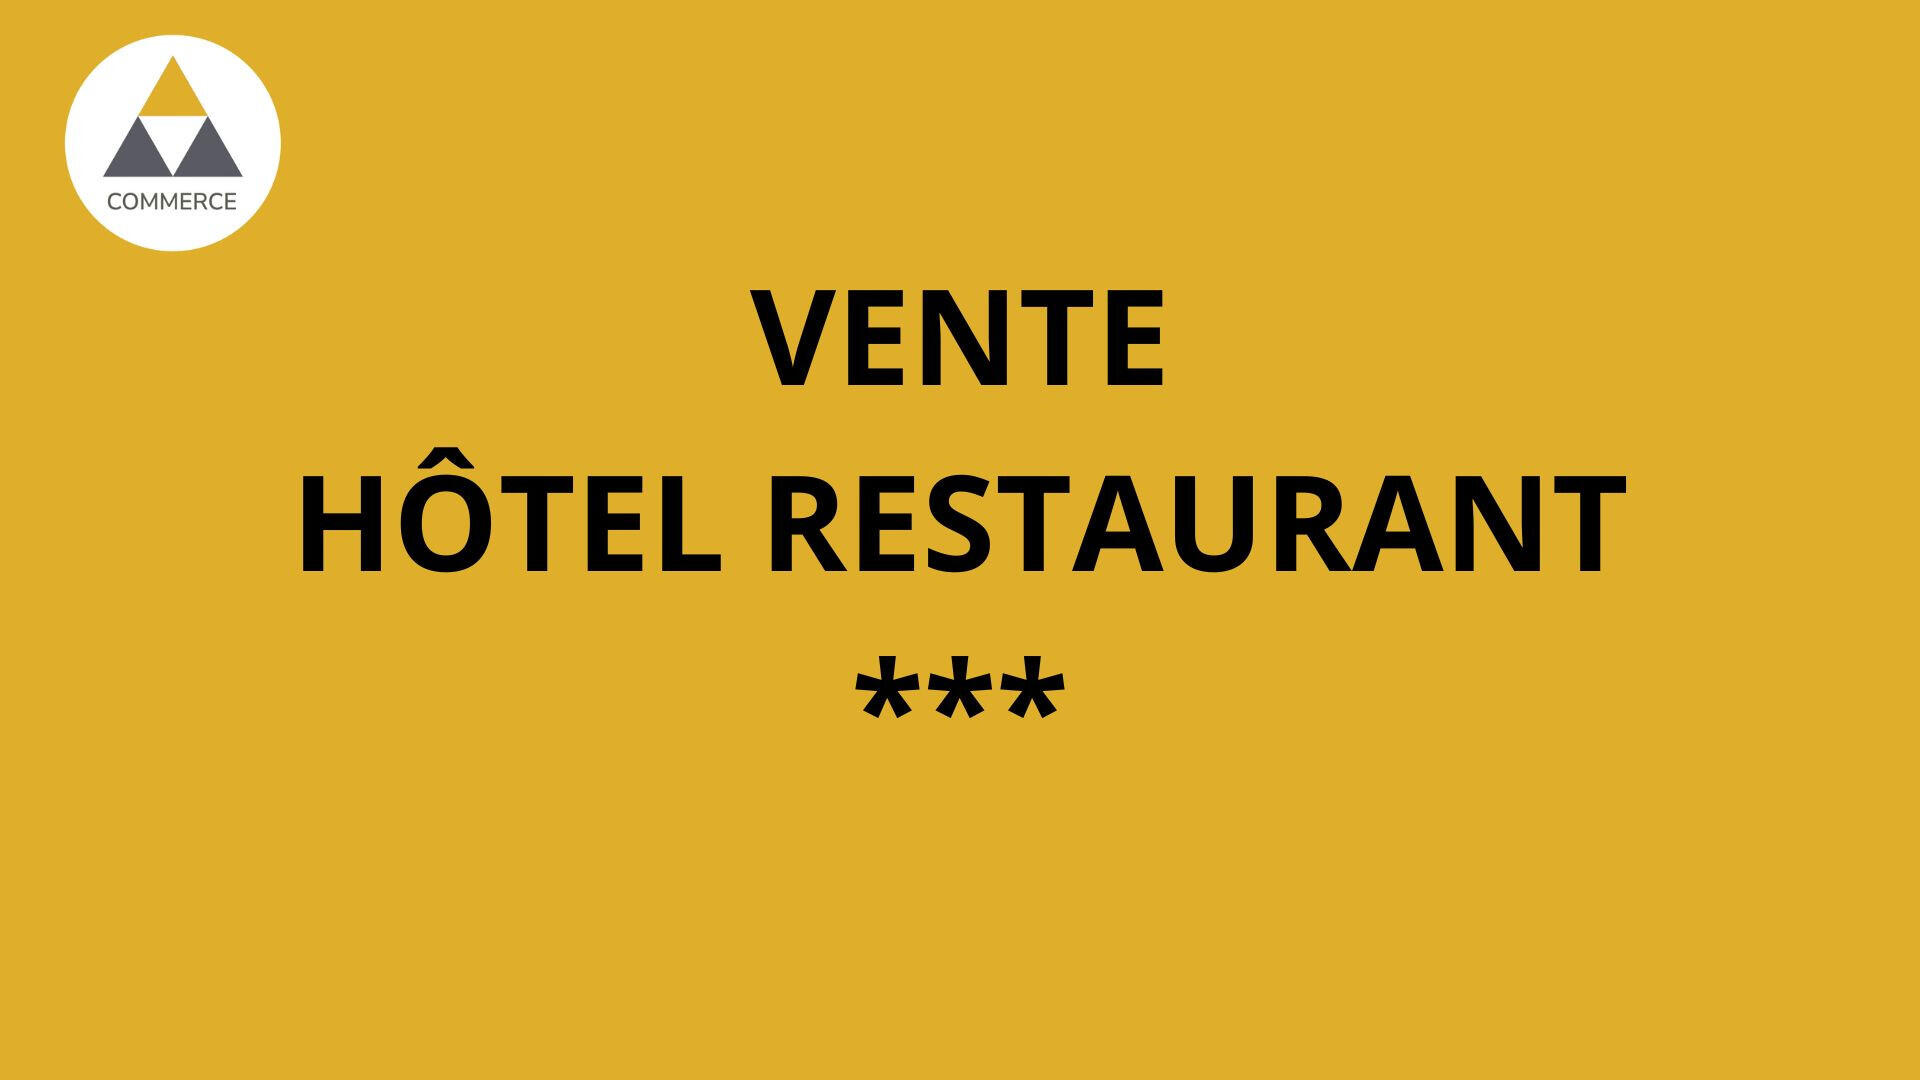 Vente hôtel restaurant *** sur axe Paris Toulouse